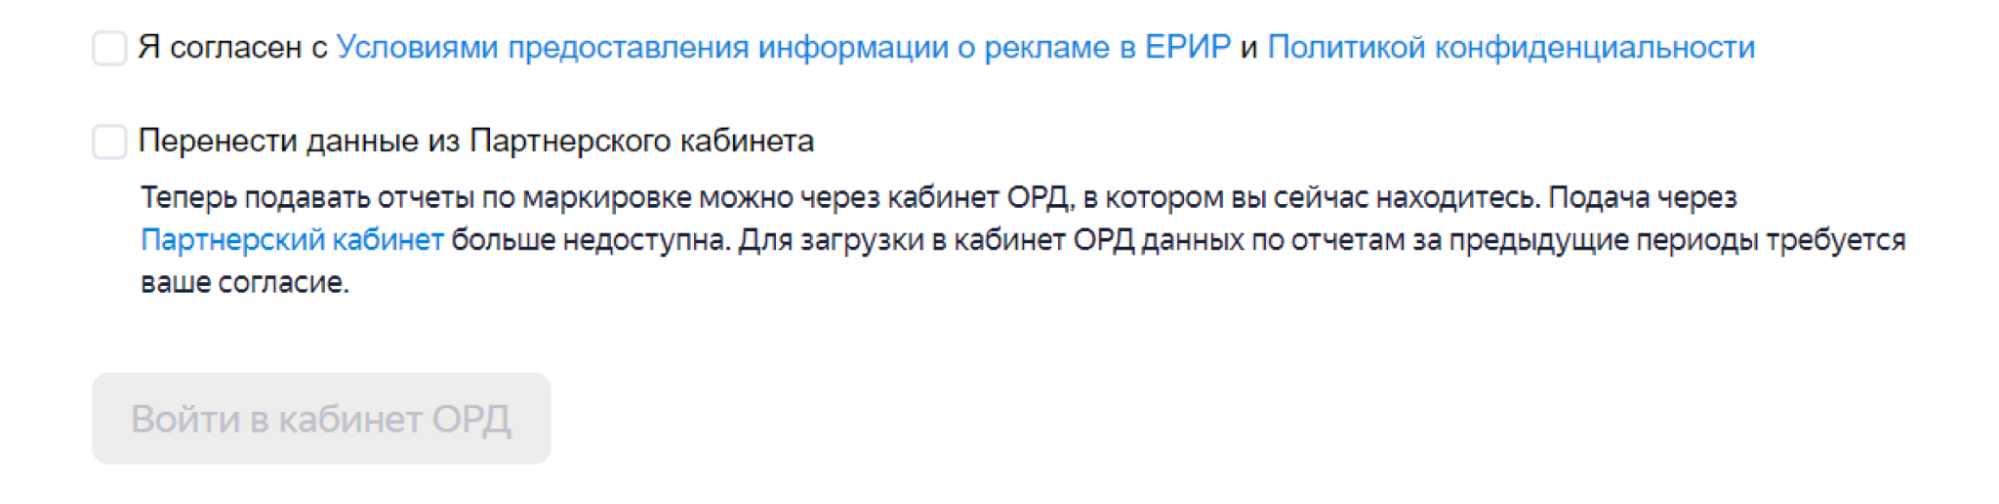 Новый кабинет ОРД Яндекса